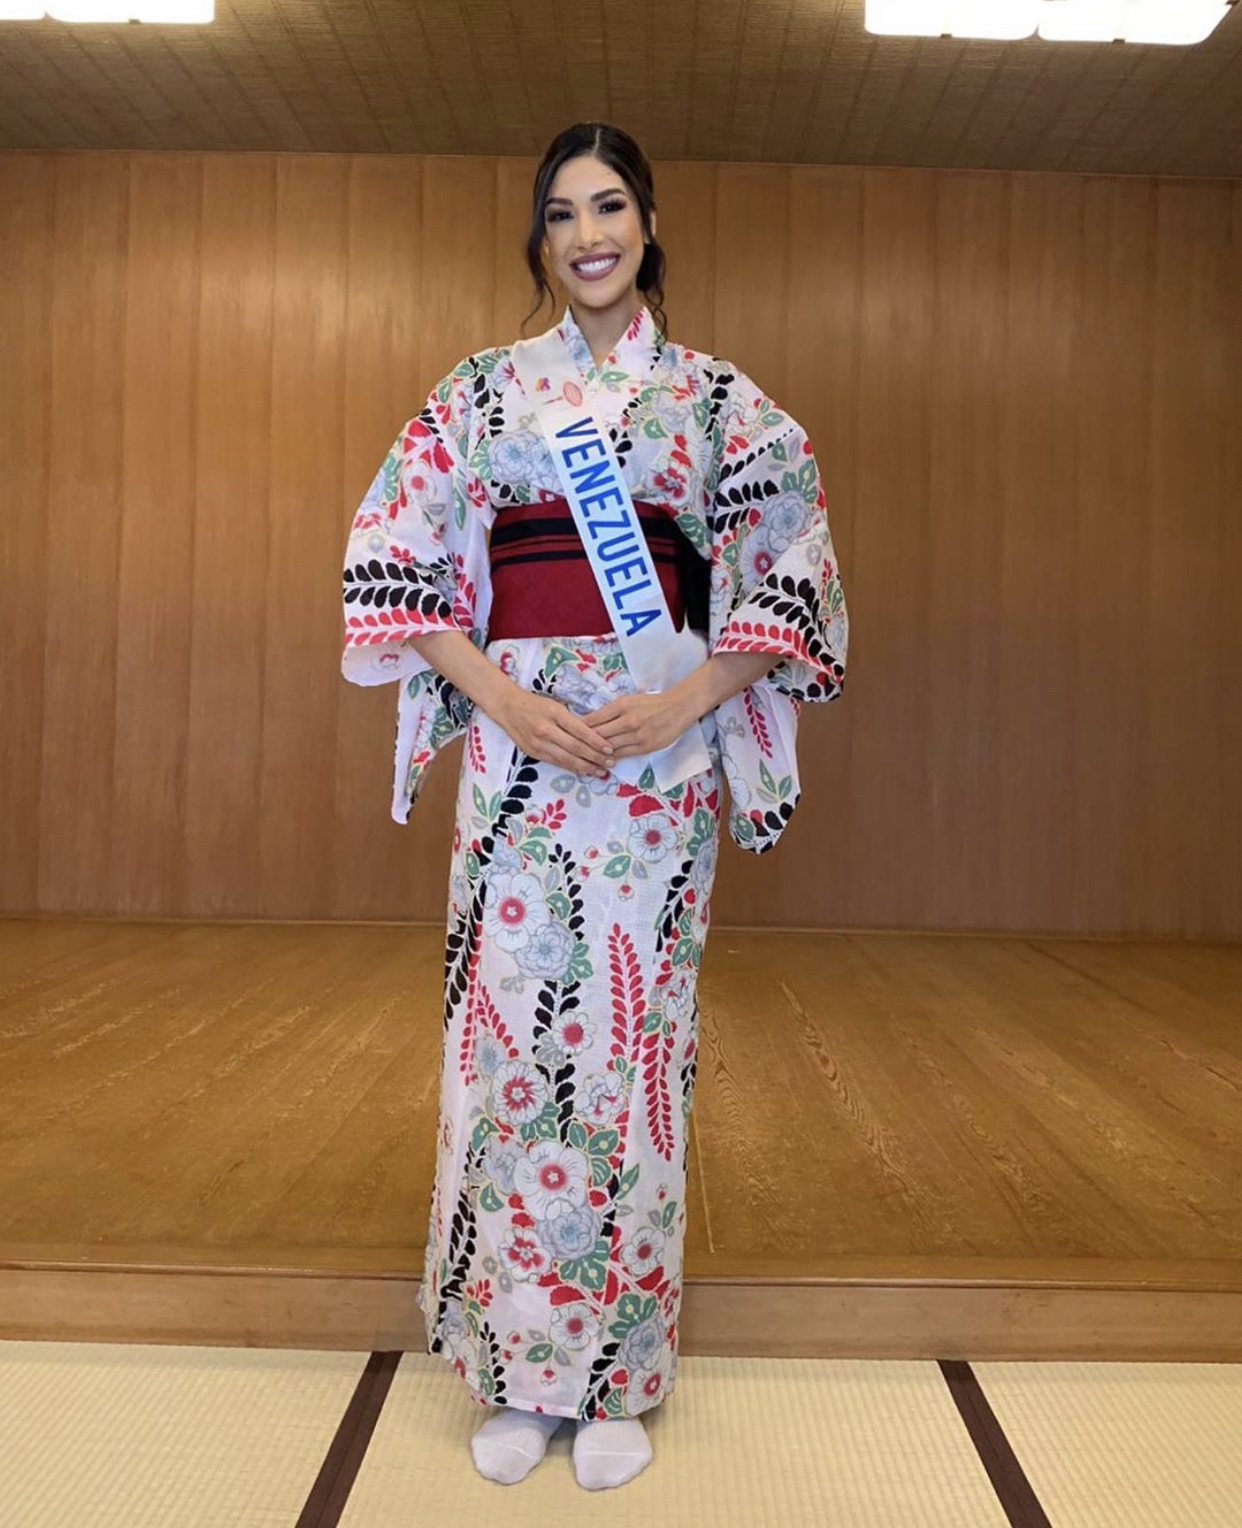 candidatas a miss international 2019 usando tradicional traje tipico japones. I4MBLC